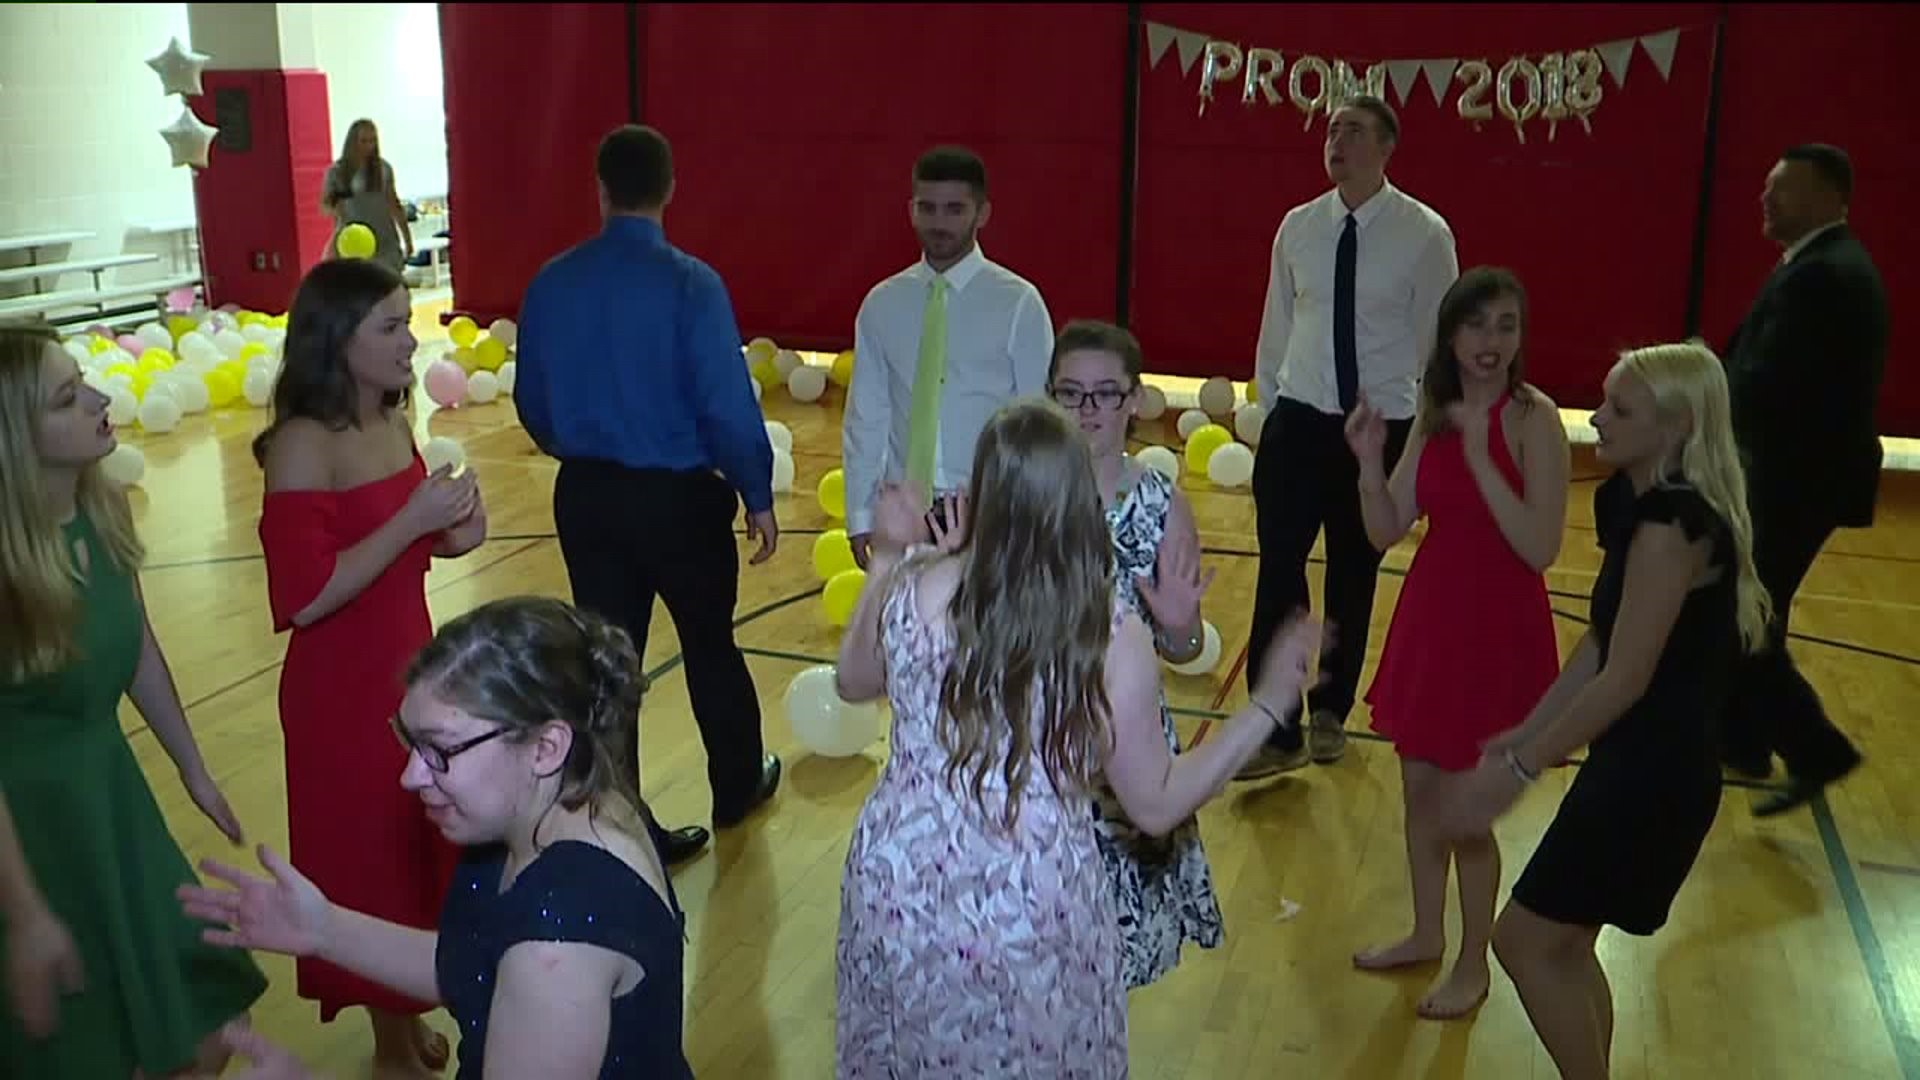 Student Volunteers Set Up Life Skills Prom